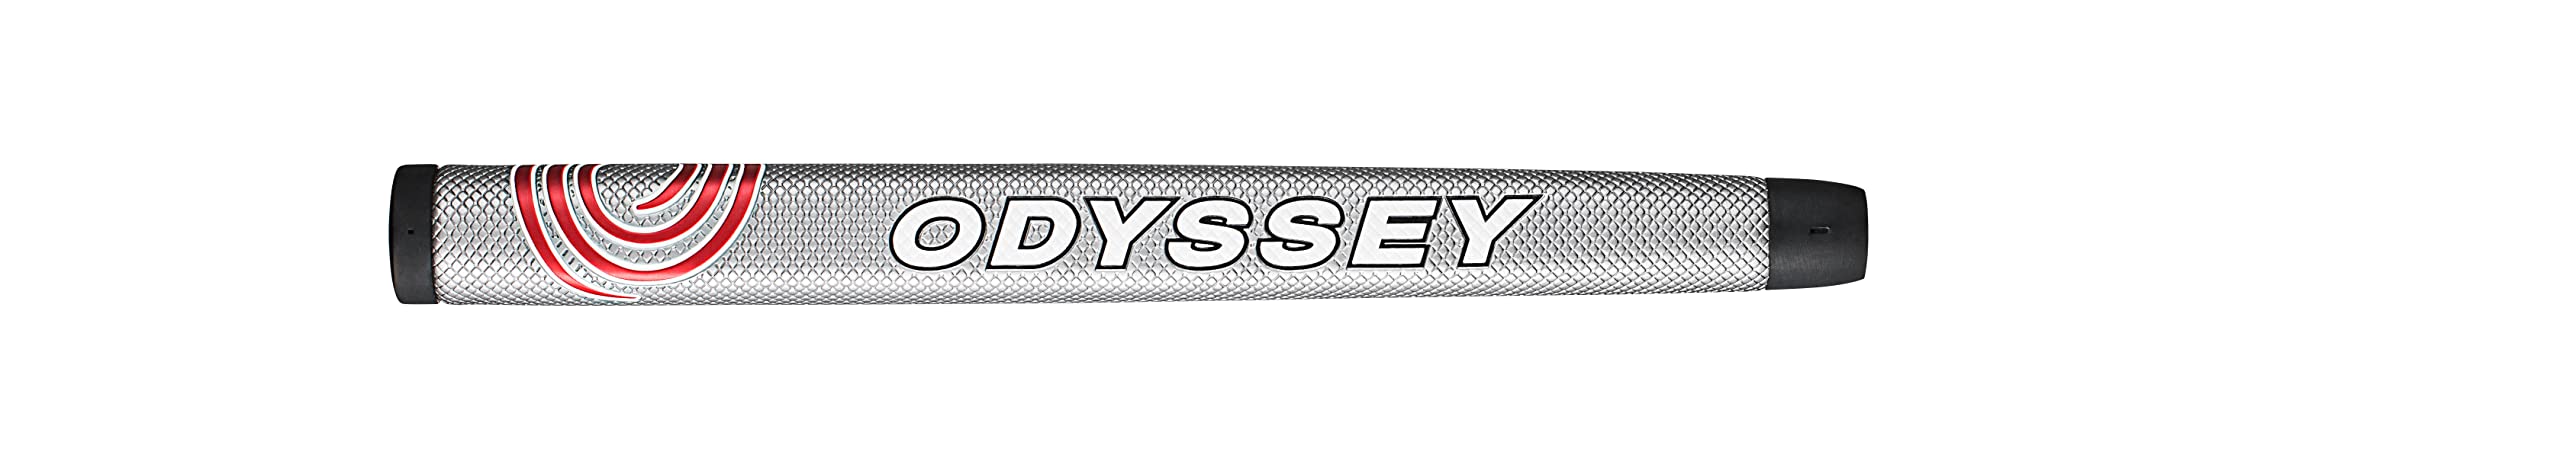 Odyssey (Men) Right Putter White HOT OG #6MS Slant Hosel